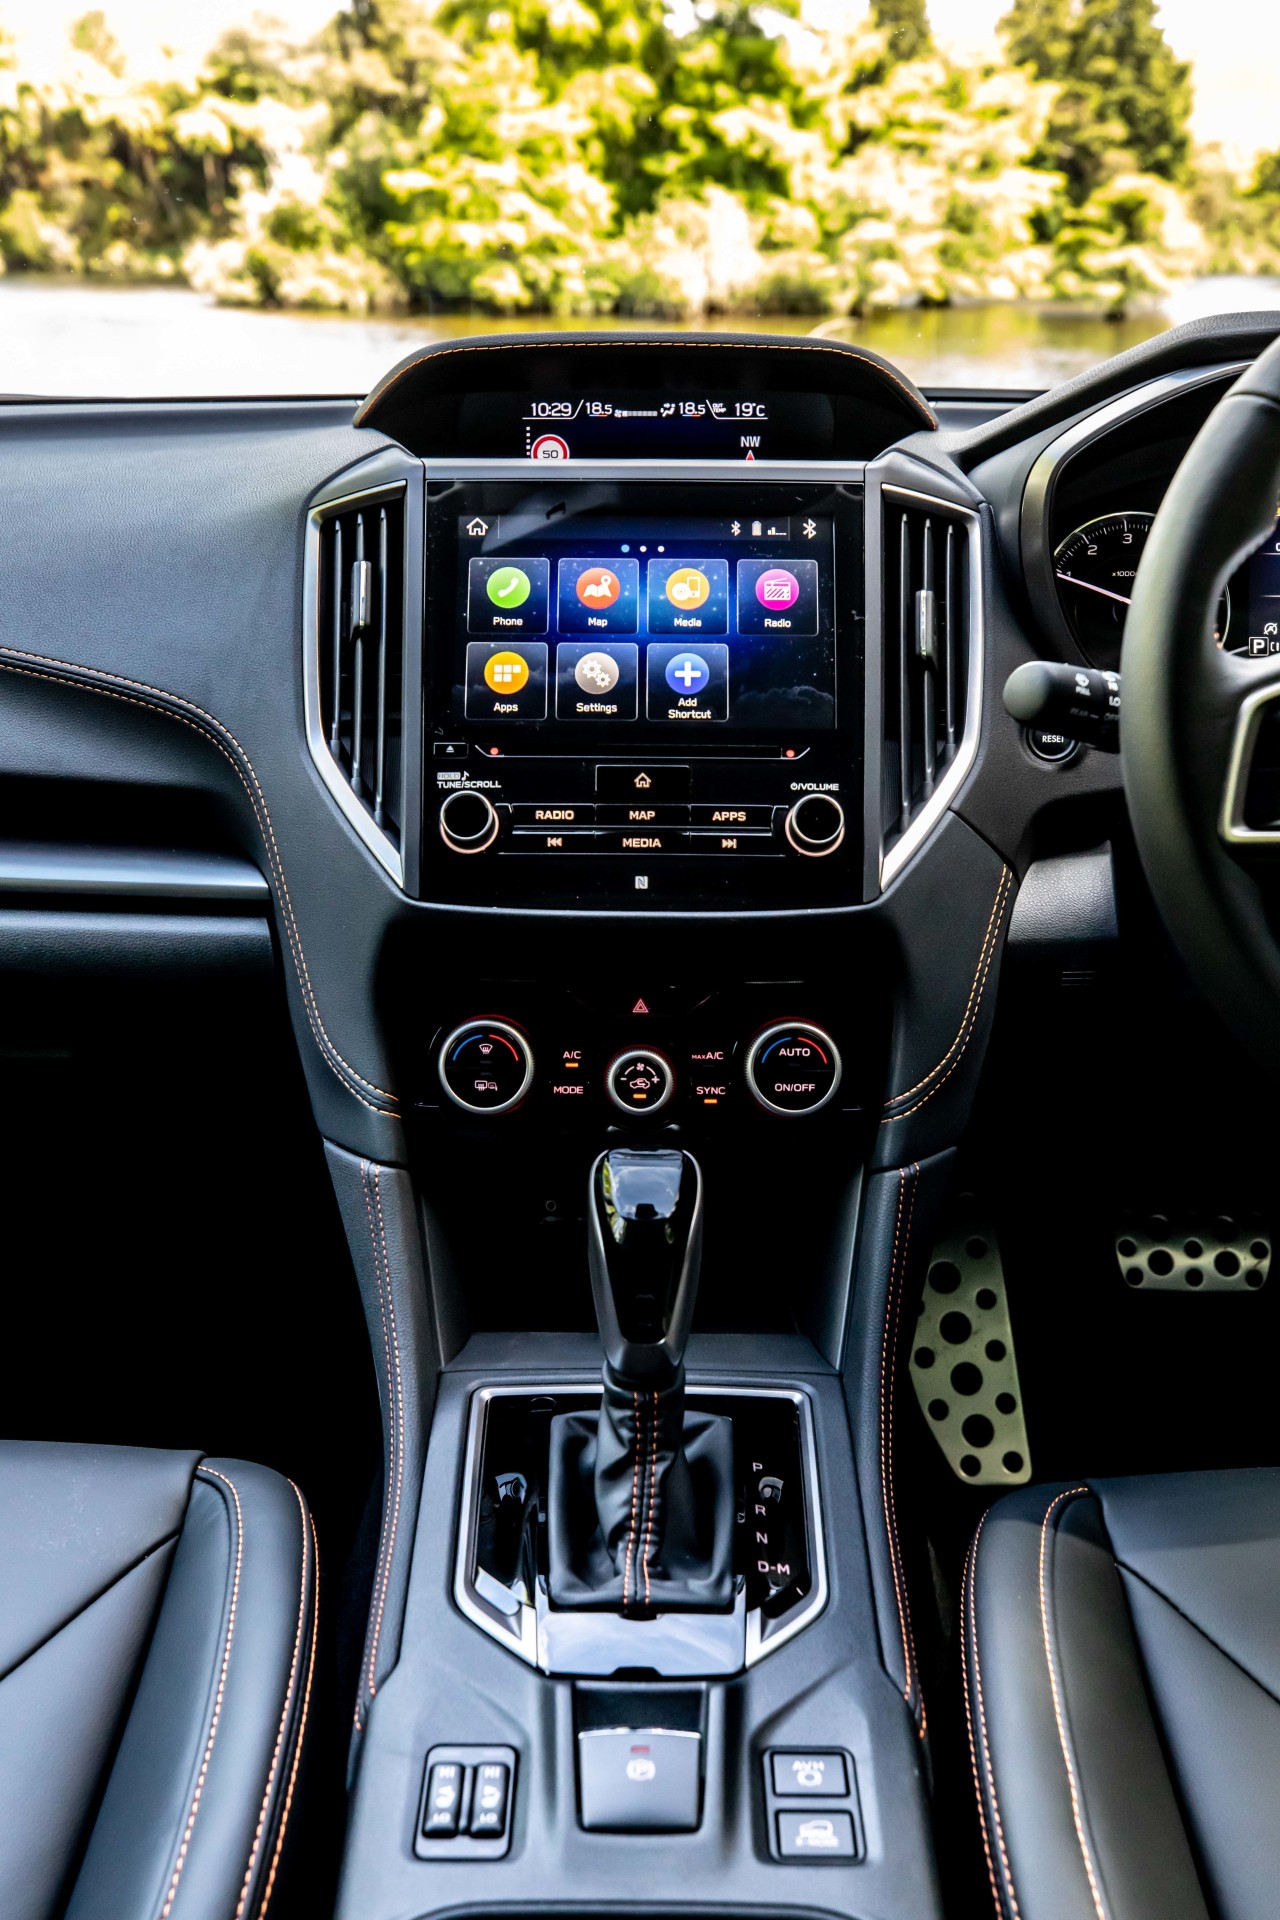 The Subaru XV Premium interior in the new 2021 model.